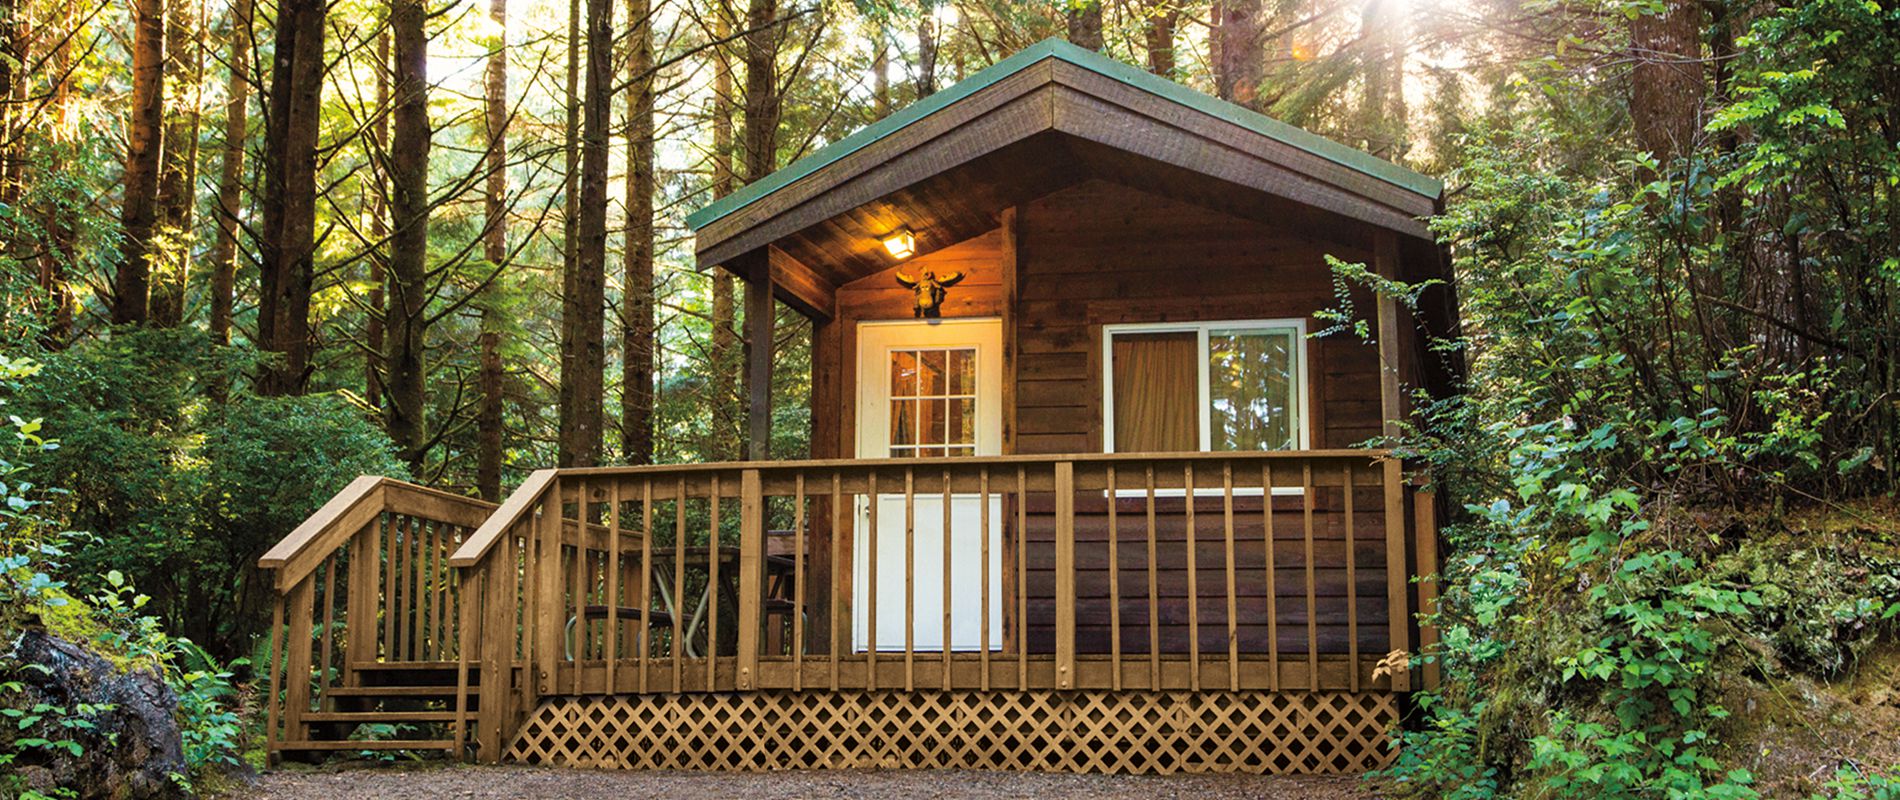 Petite Retreats Unique Tiny Houses Yurts Cottages Cabins